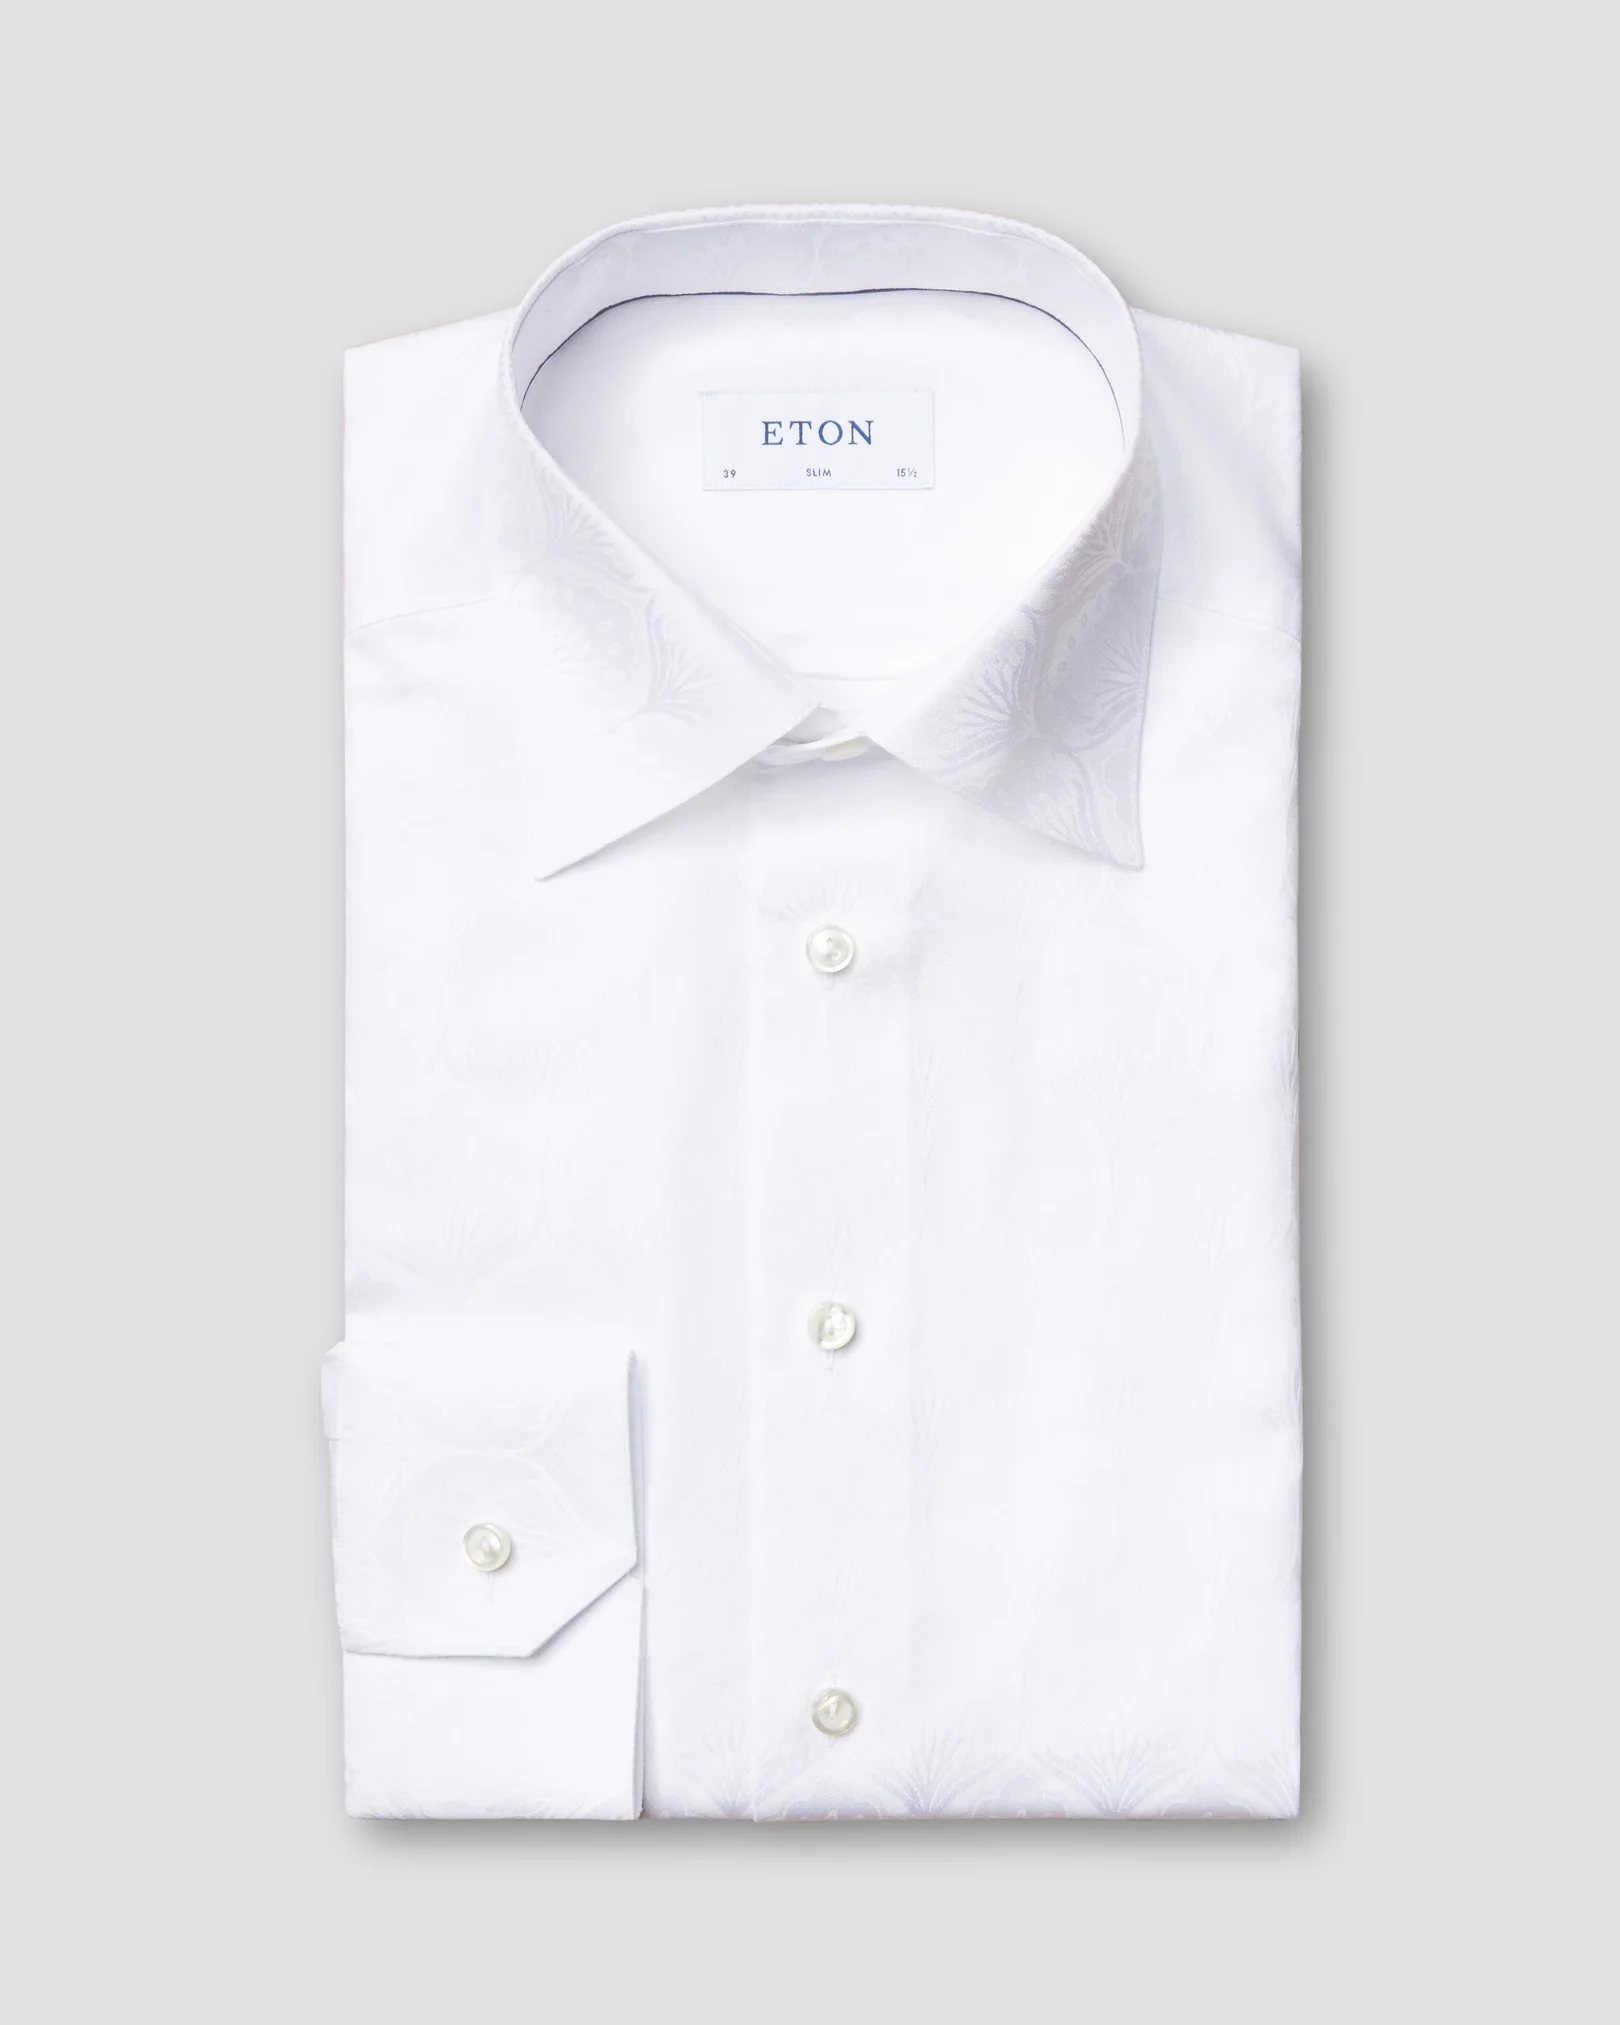 Eton - white on white art deco jacquard shirt